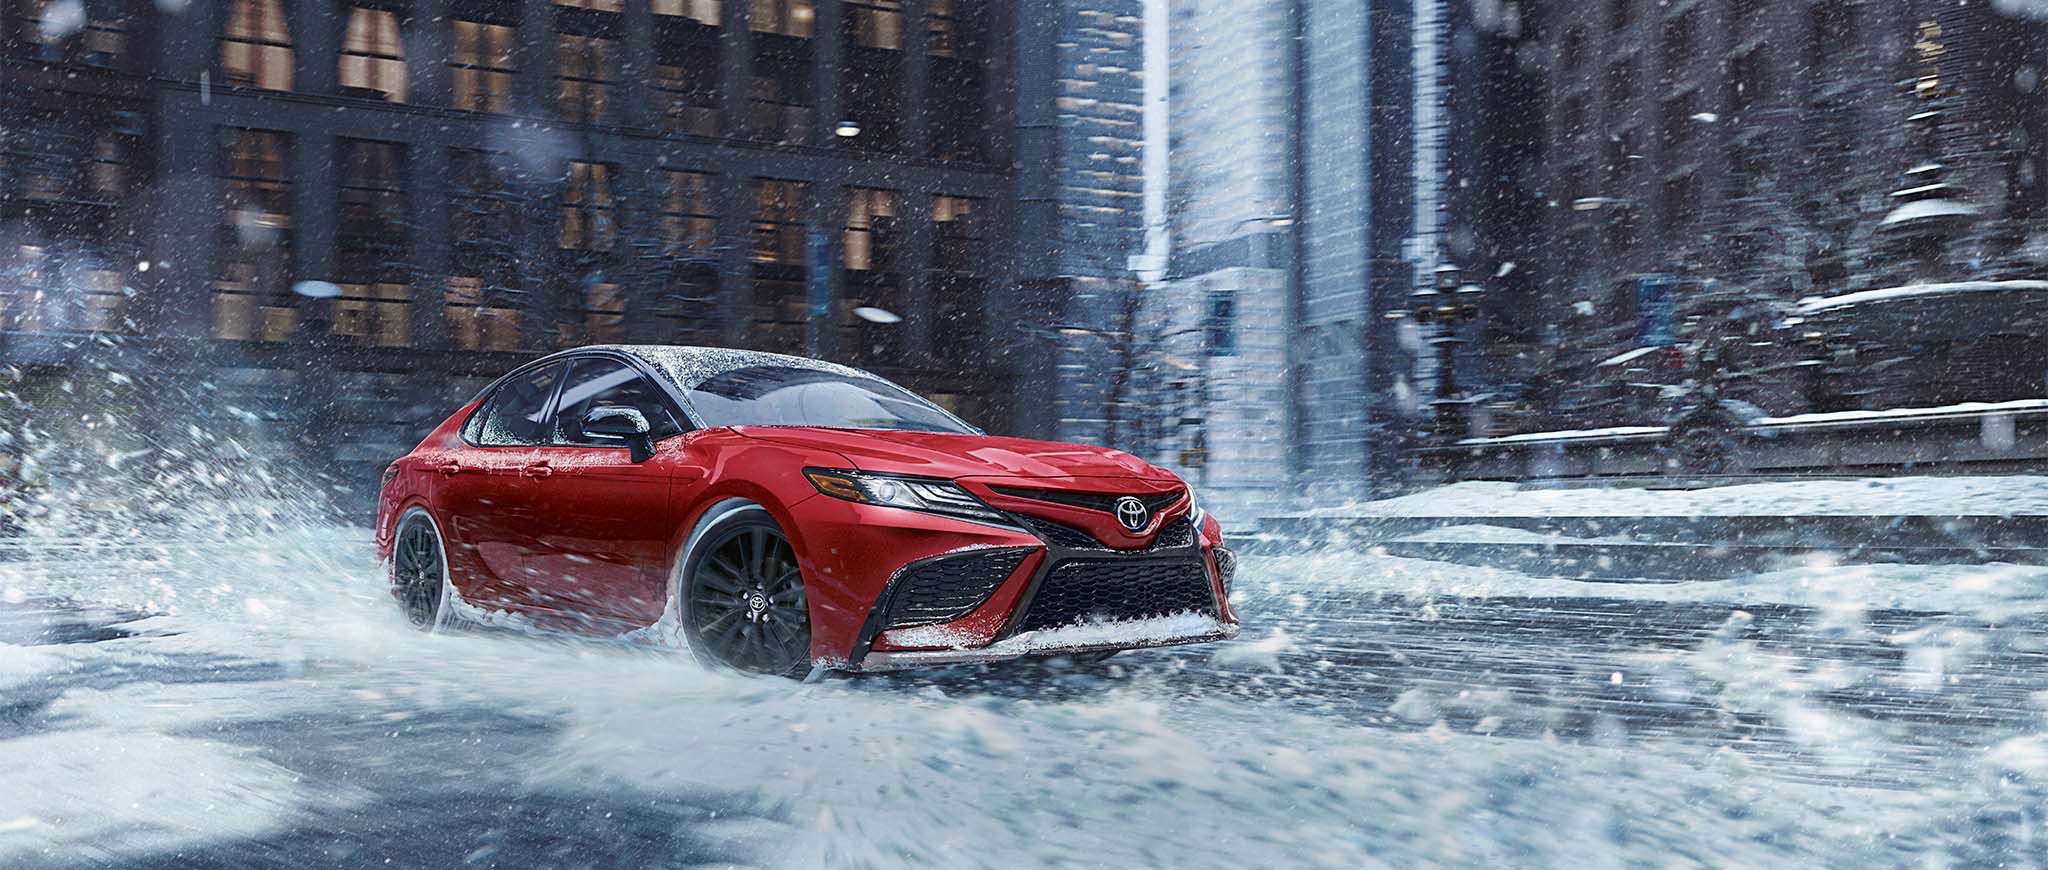 Un Toyota Camry rojo viajando sobre una calle con nieve.